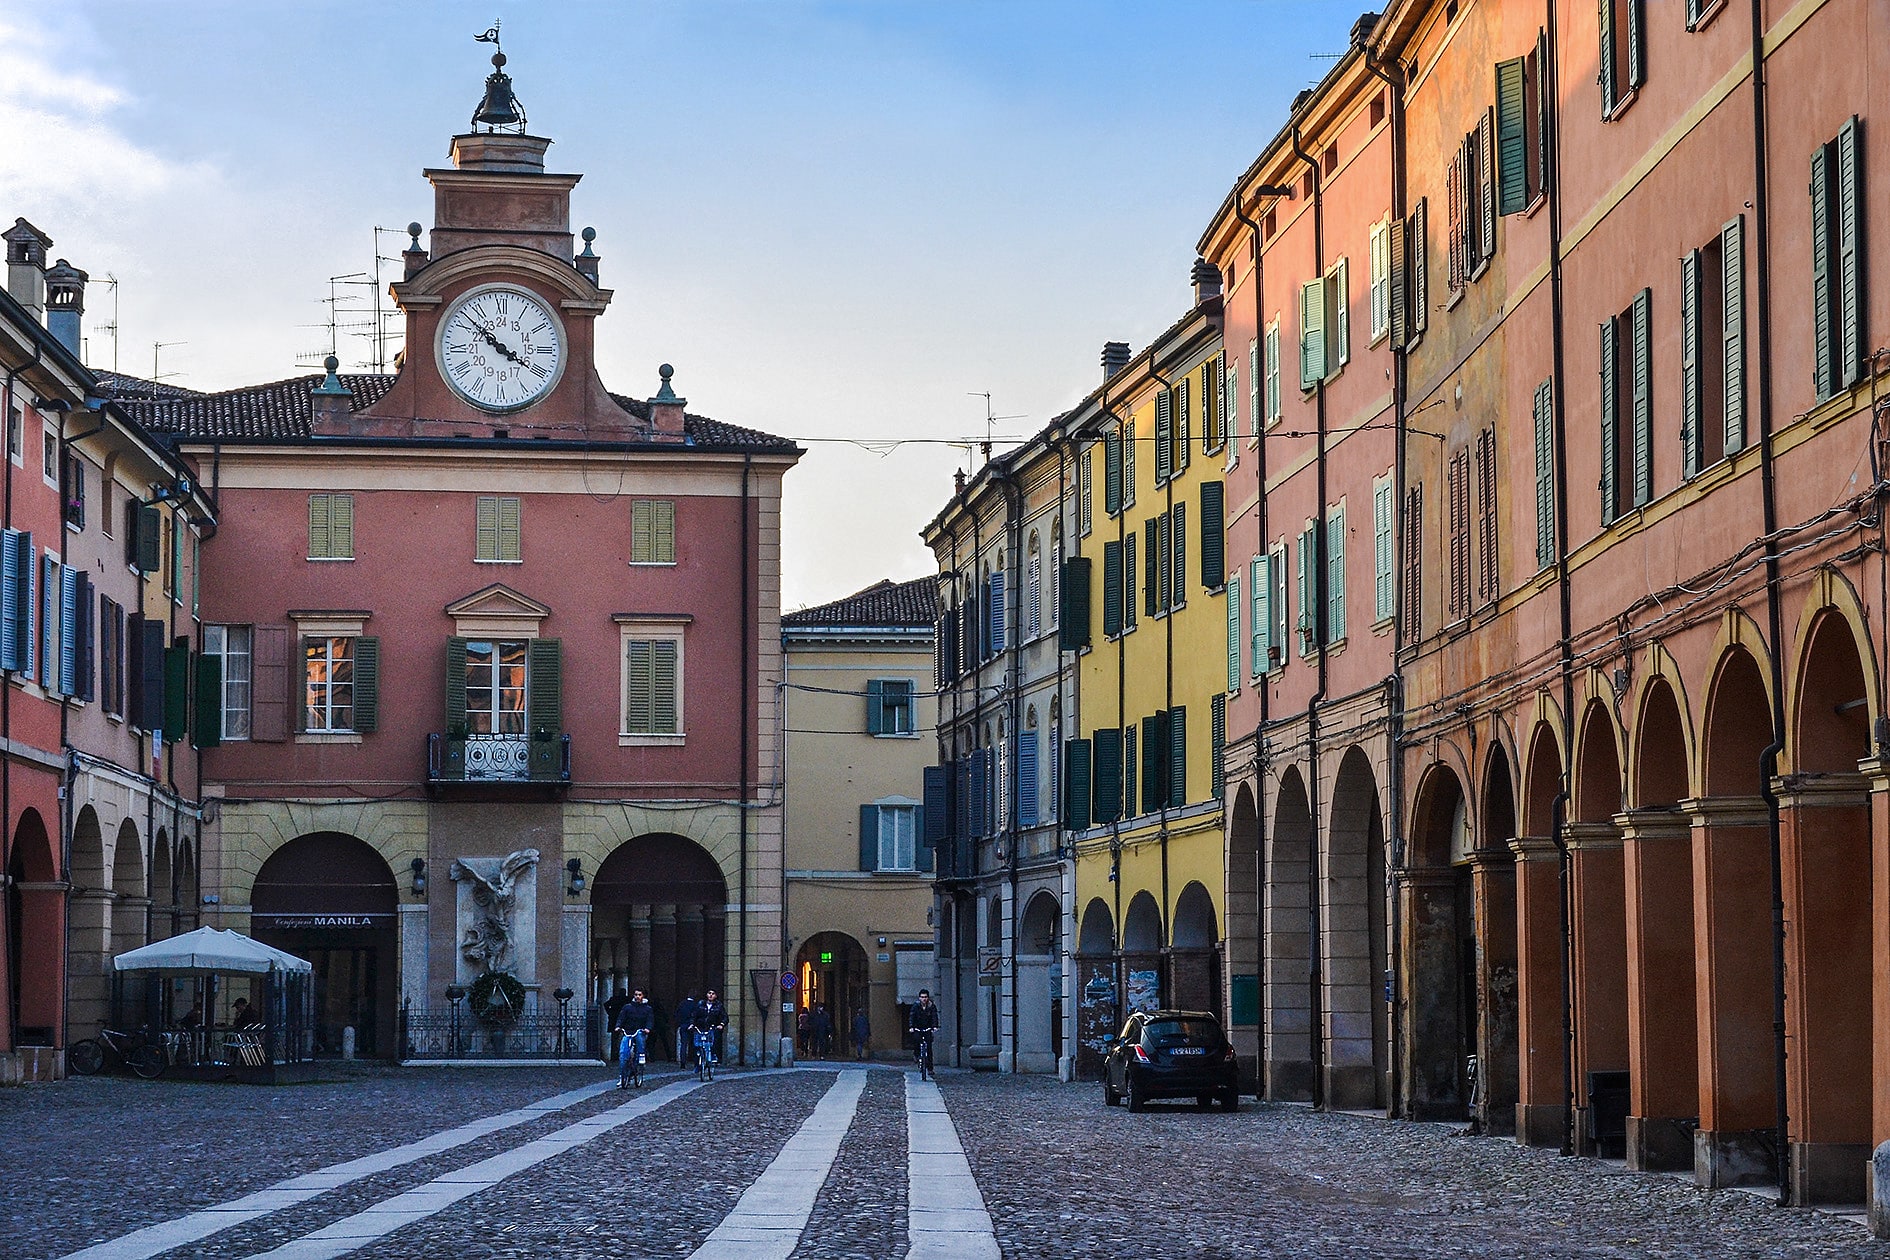 Correggio, Italy